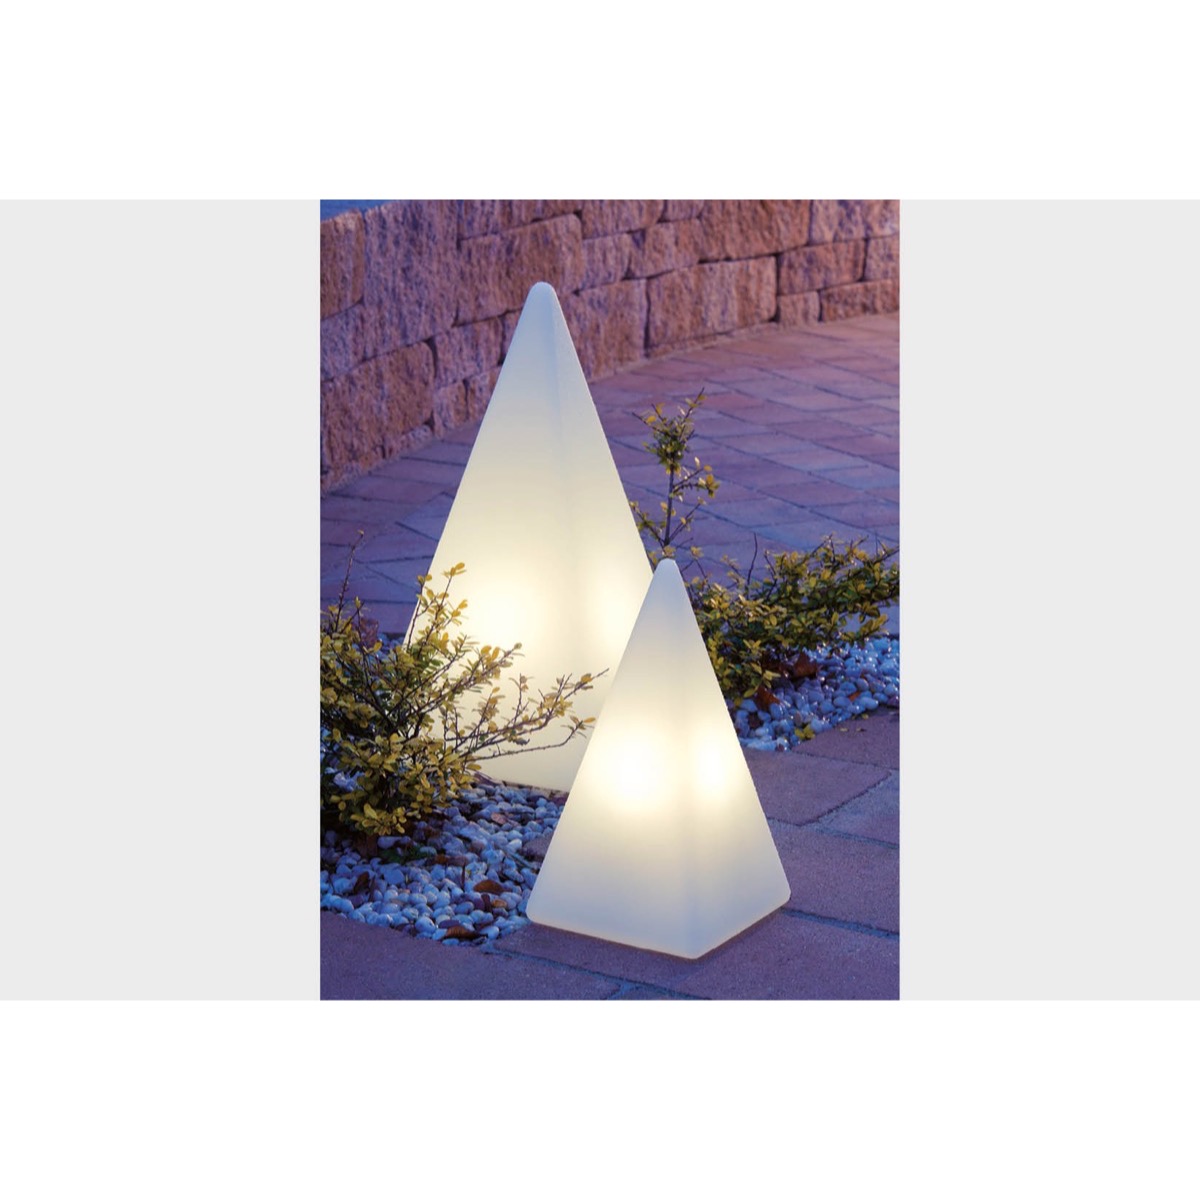 70805 Standleuchte Pyramide 73 cm der Firma EPSTEIN Design Leuchten